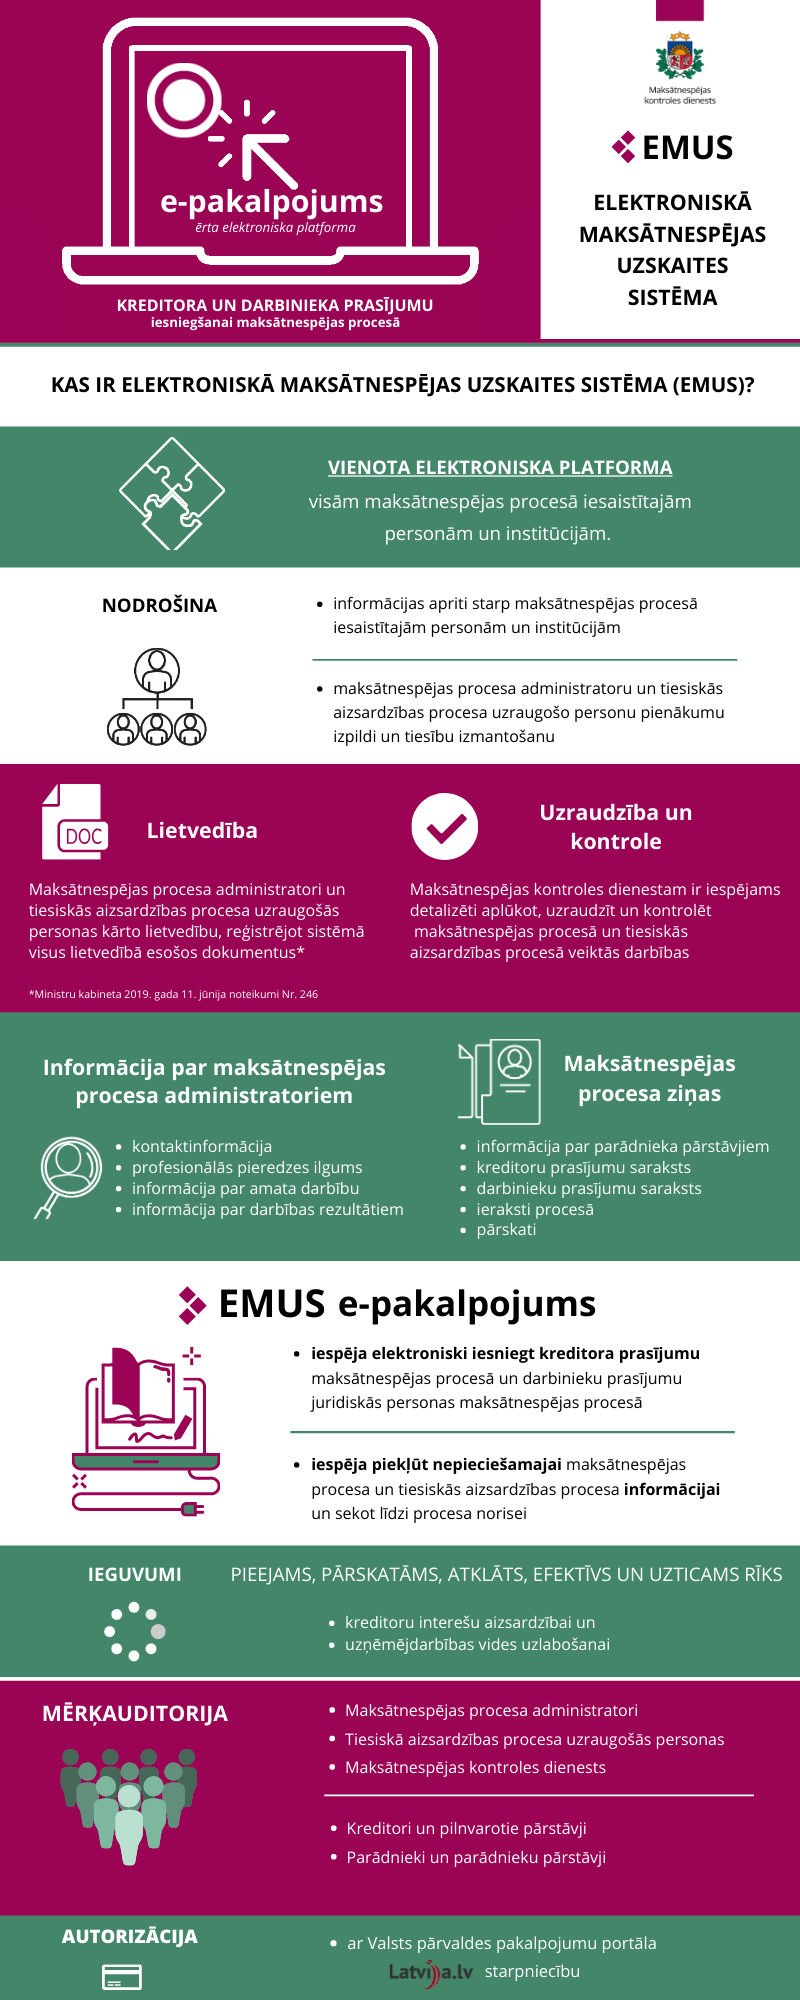 INFOGRAFIKA: Kas ir Elektroniskā maksātnespējas uzskaites sistēma (EMUS) un EMUS e-pakalpojums